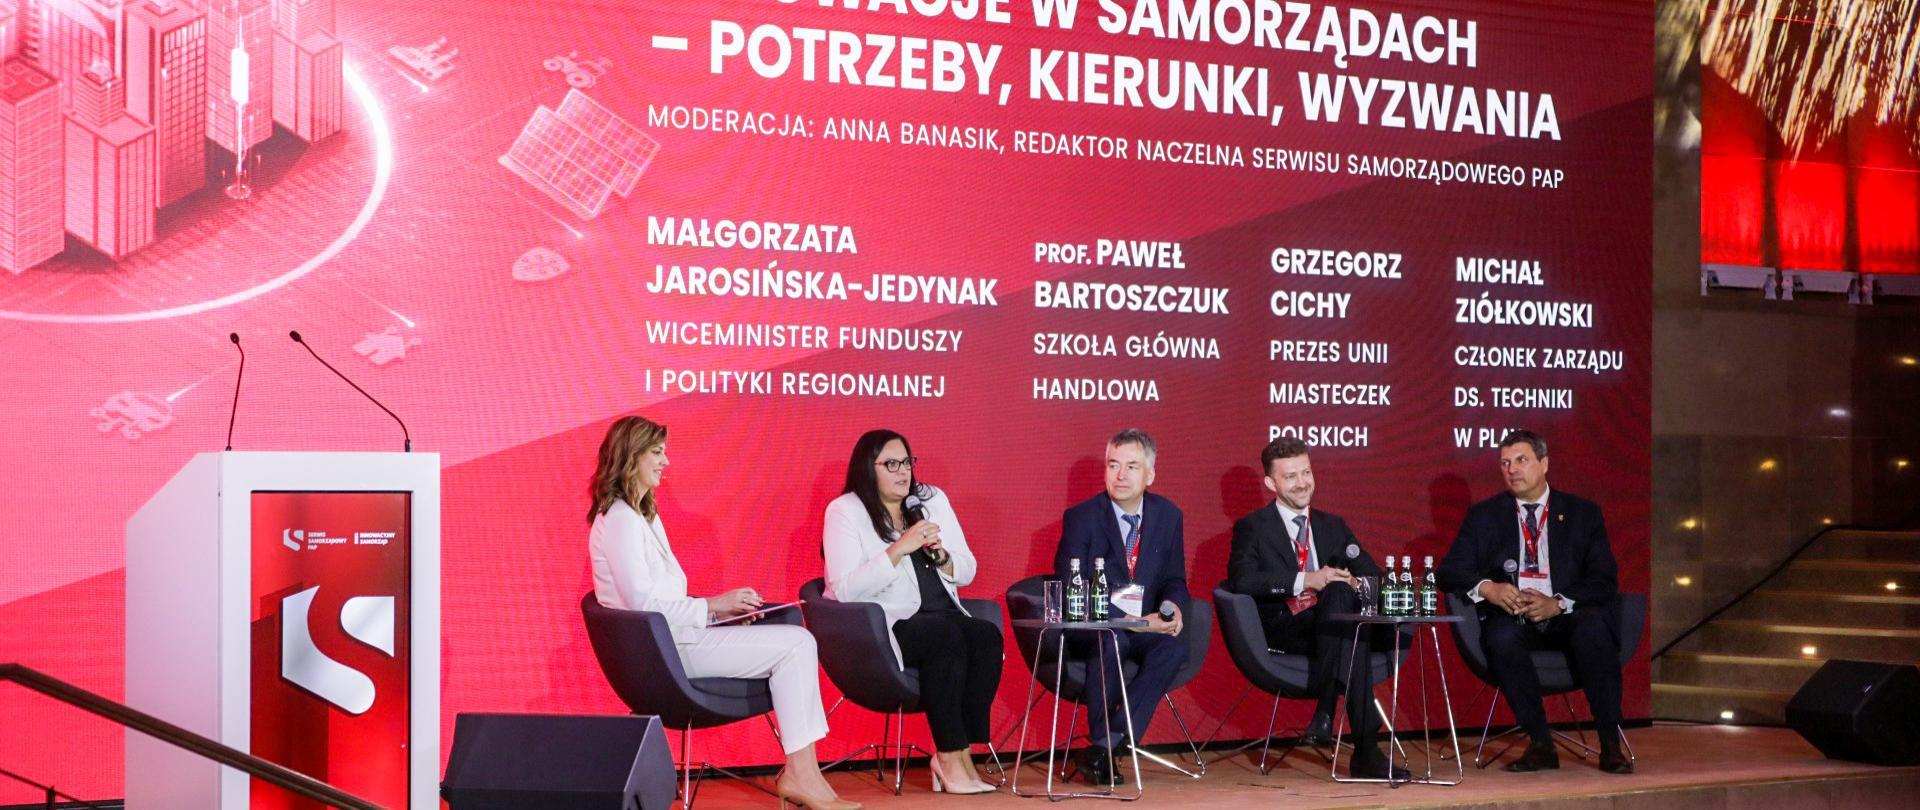 Na scenie pięć osób siedzi w fotelach. Druga od lewej wiceminister Małgorzata Jarosińska-Jedynak z mikrofonem.